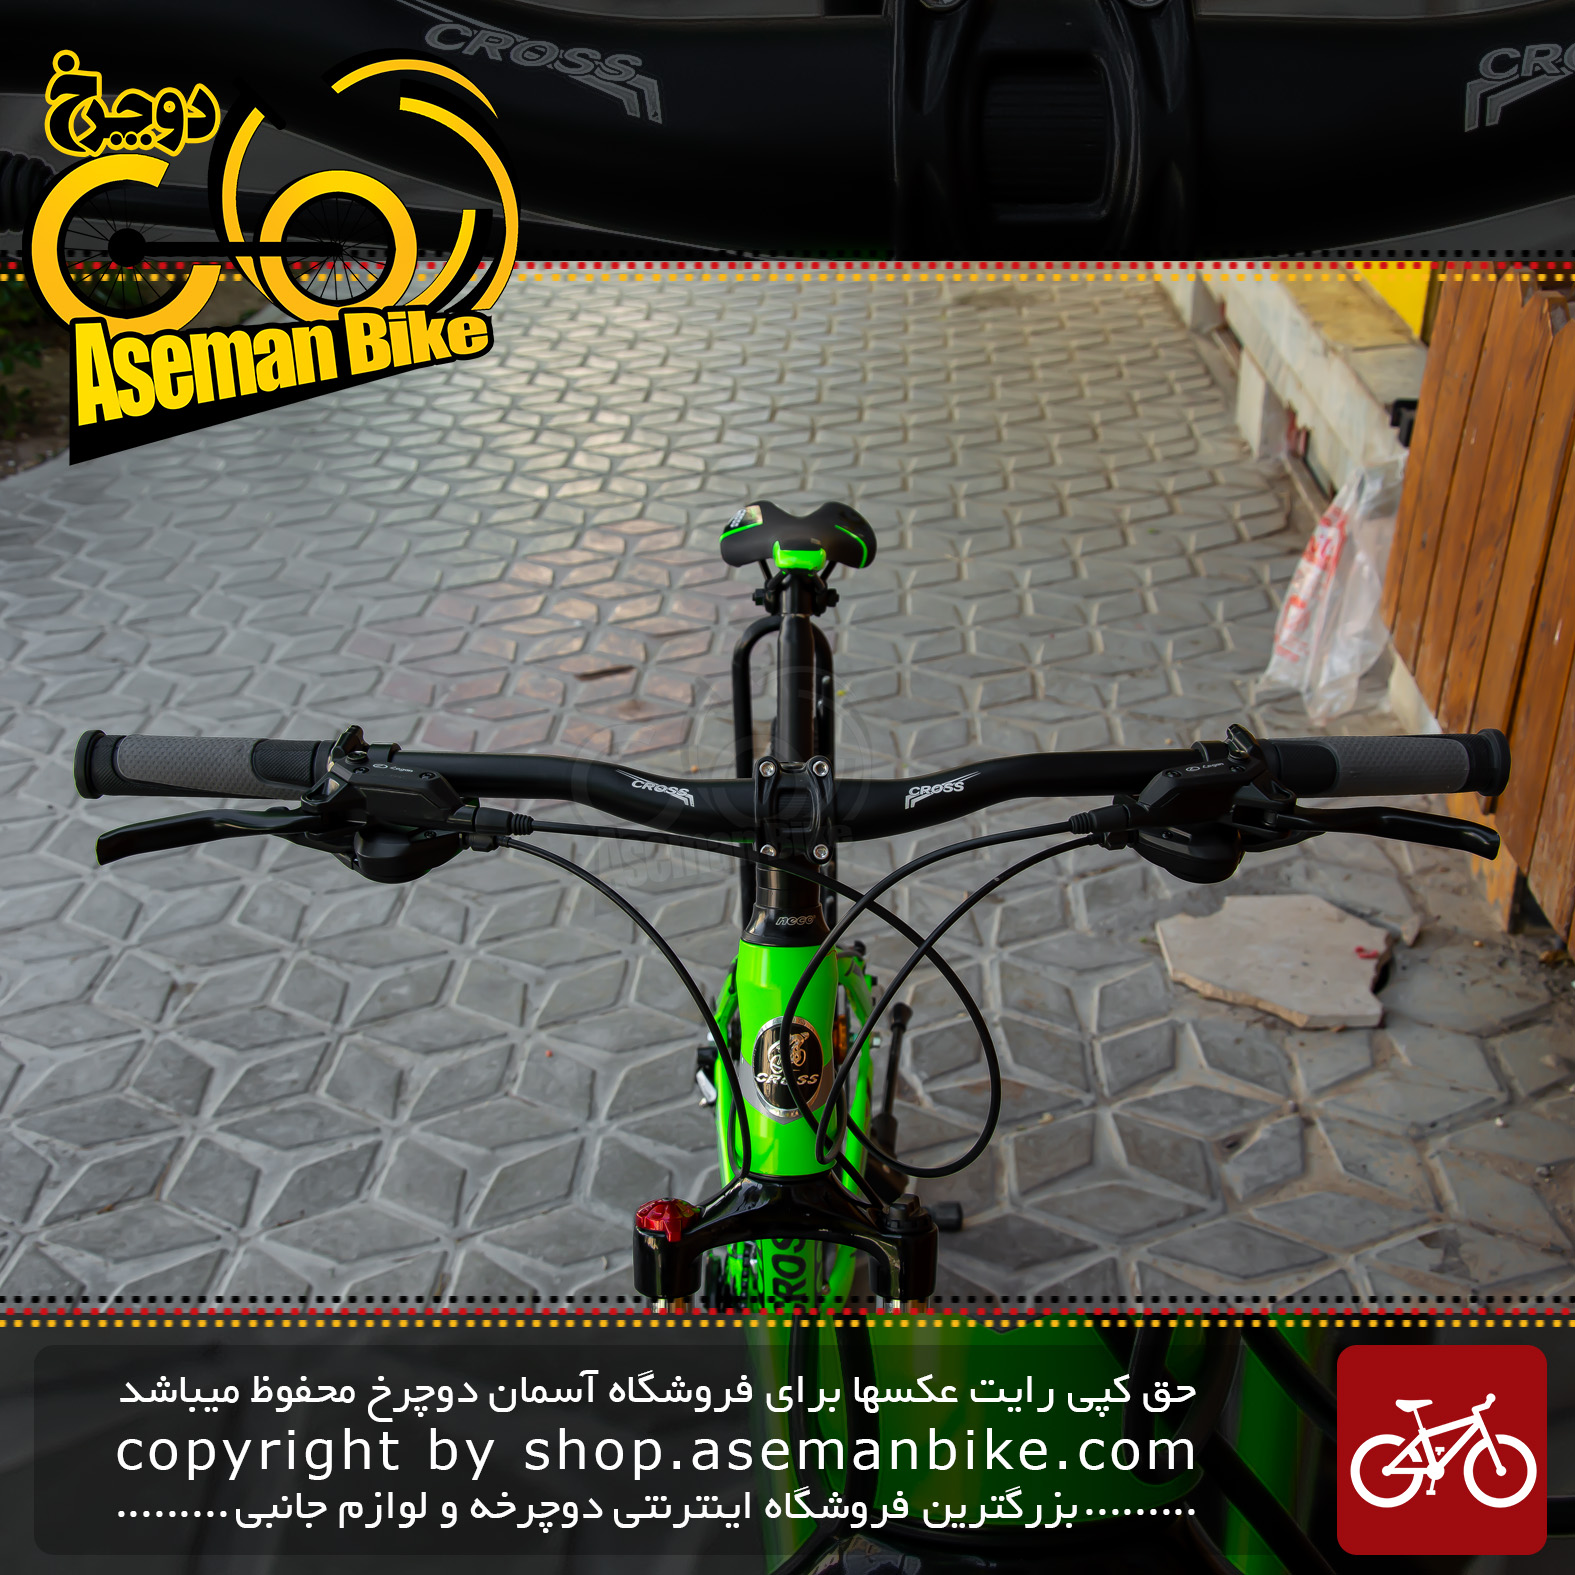 دوچرخه کوهستان برند کراس سایز 27.5 رنگ سبز و مشکی با سیستم دنده 24 سرعته MTB Bicycle Cross Aspect Size 27.5 24 Speed